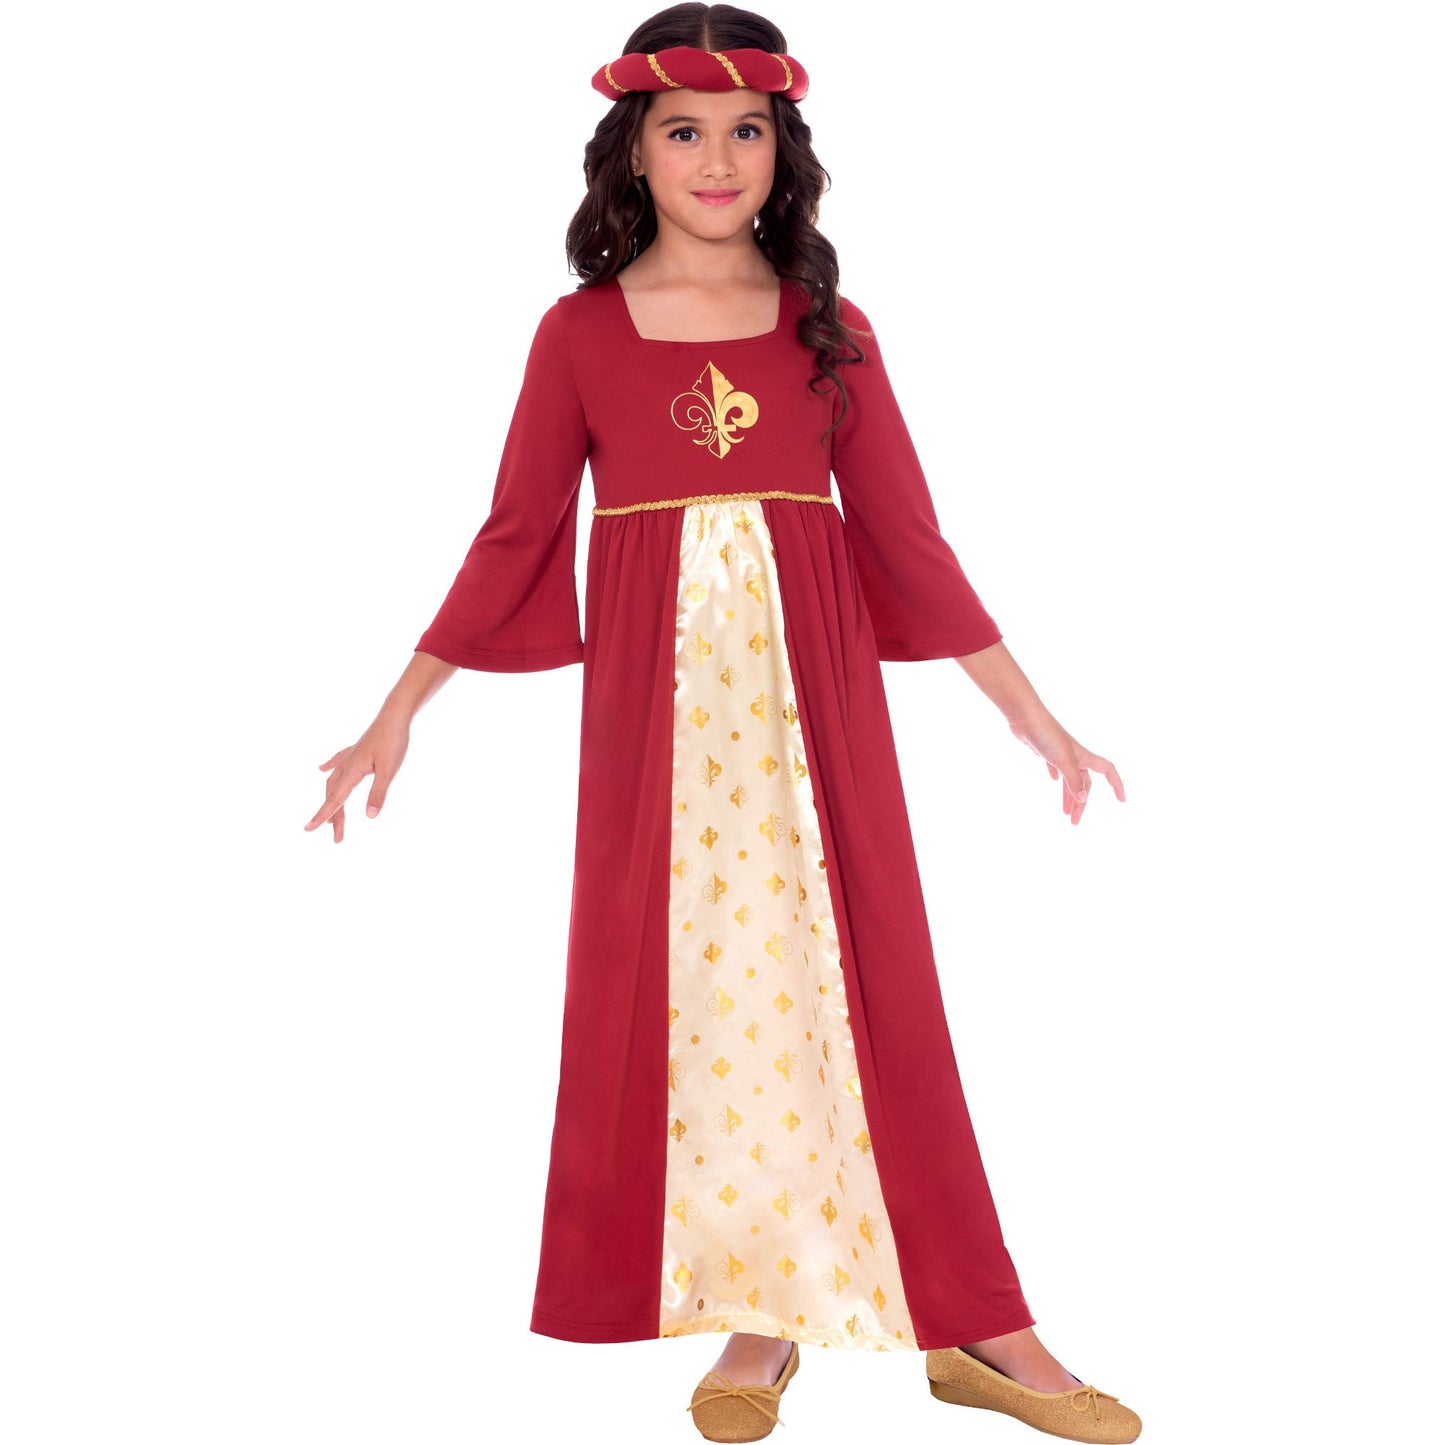 Costume Tudor Princess Red Girls 10-12 Years